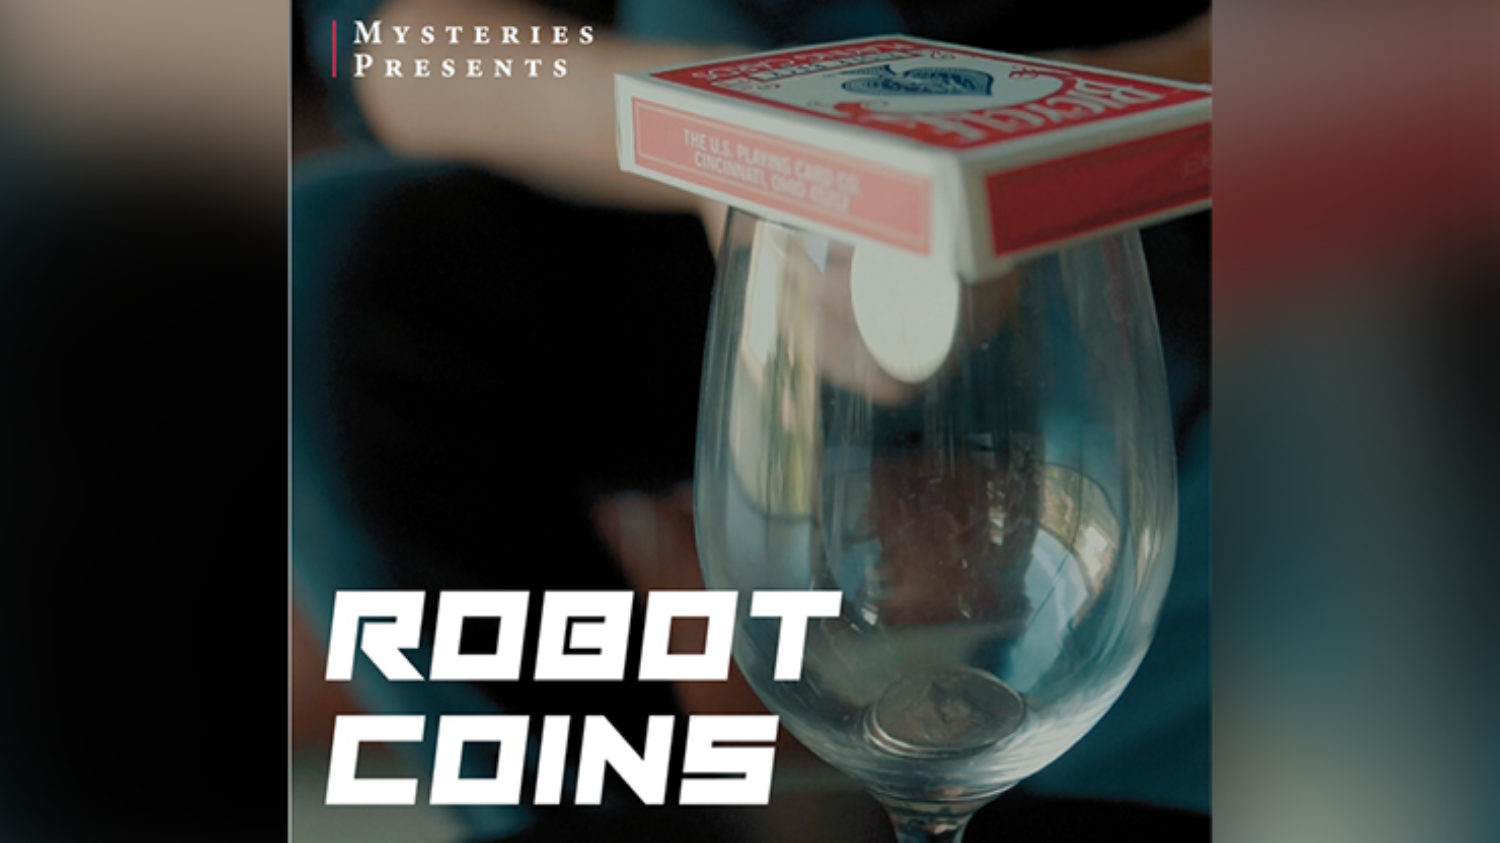 로봇코인(Robot Coins) 투명한 와인잔으로 동전을 이동시킬 수 있습니다.